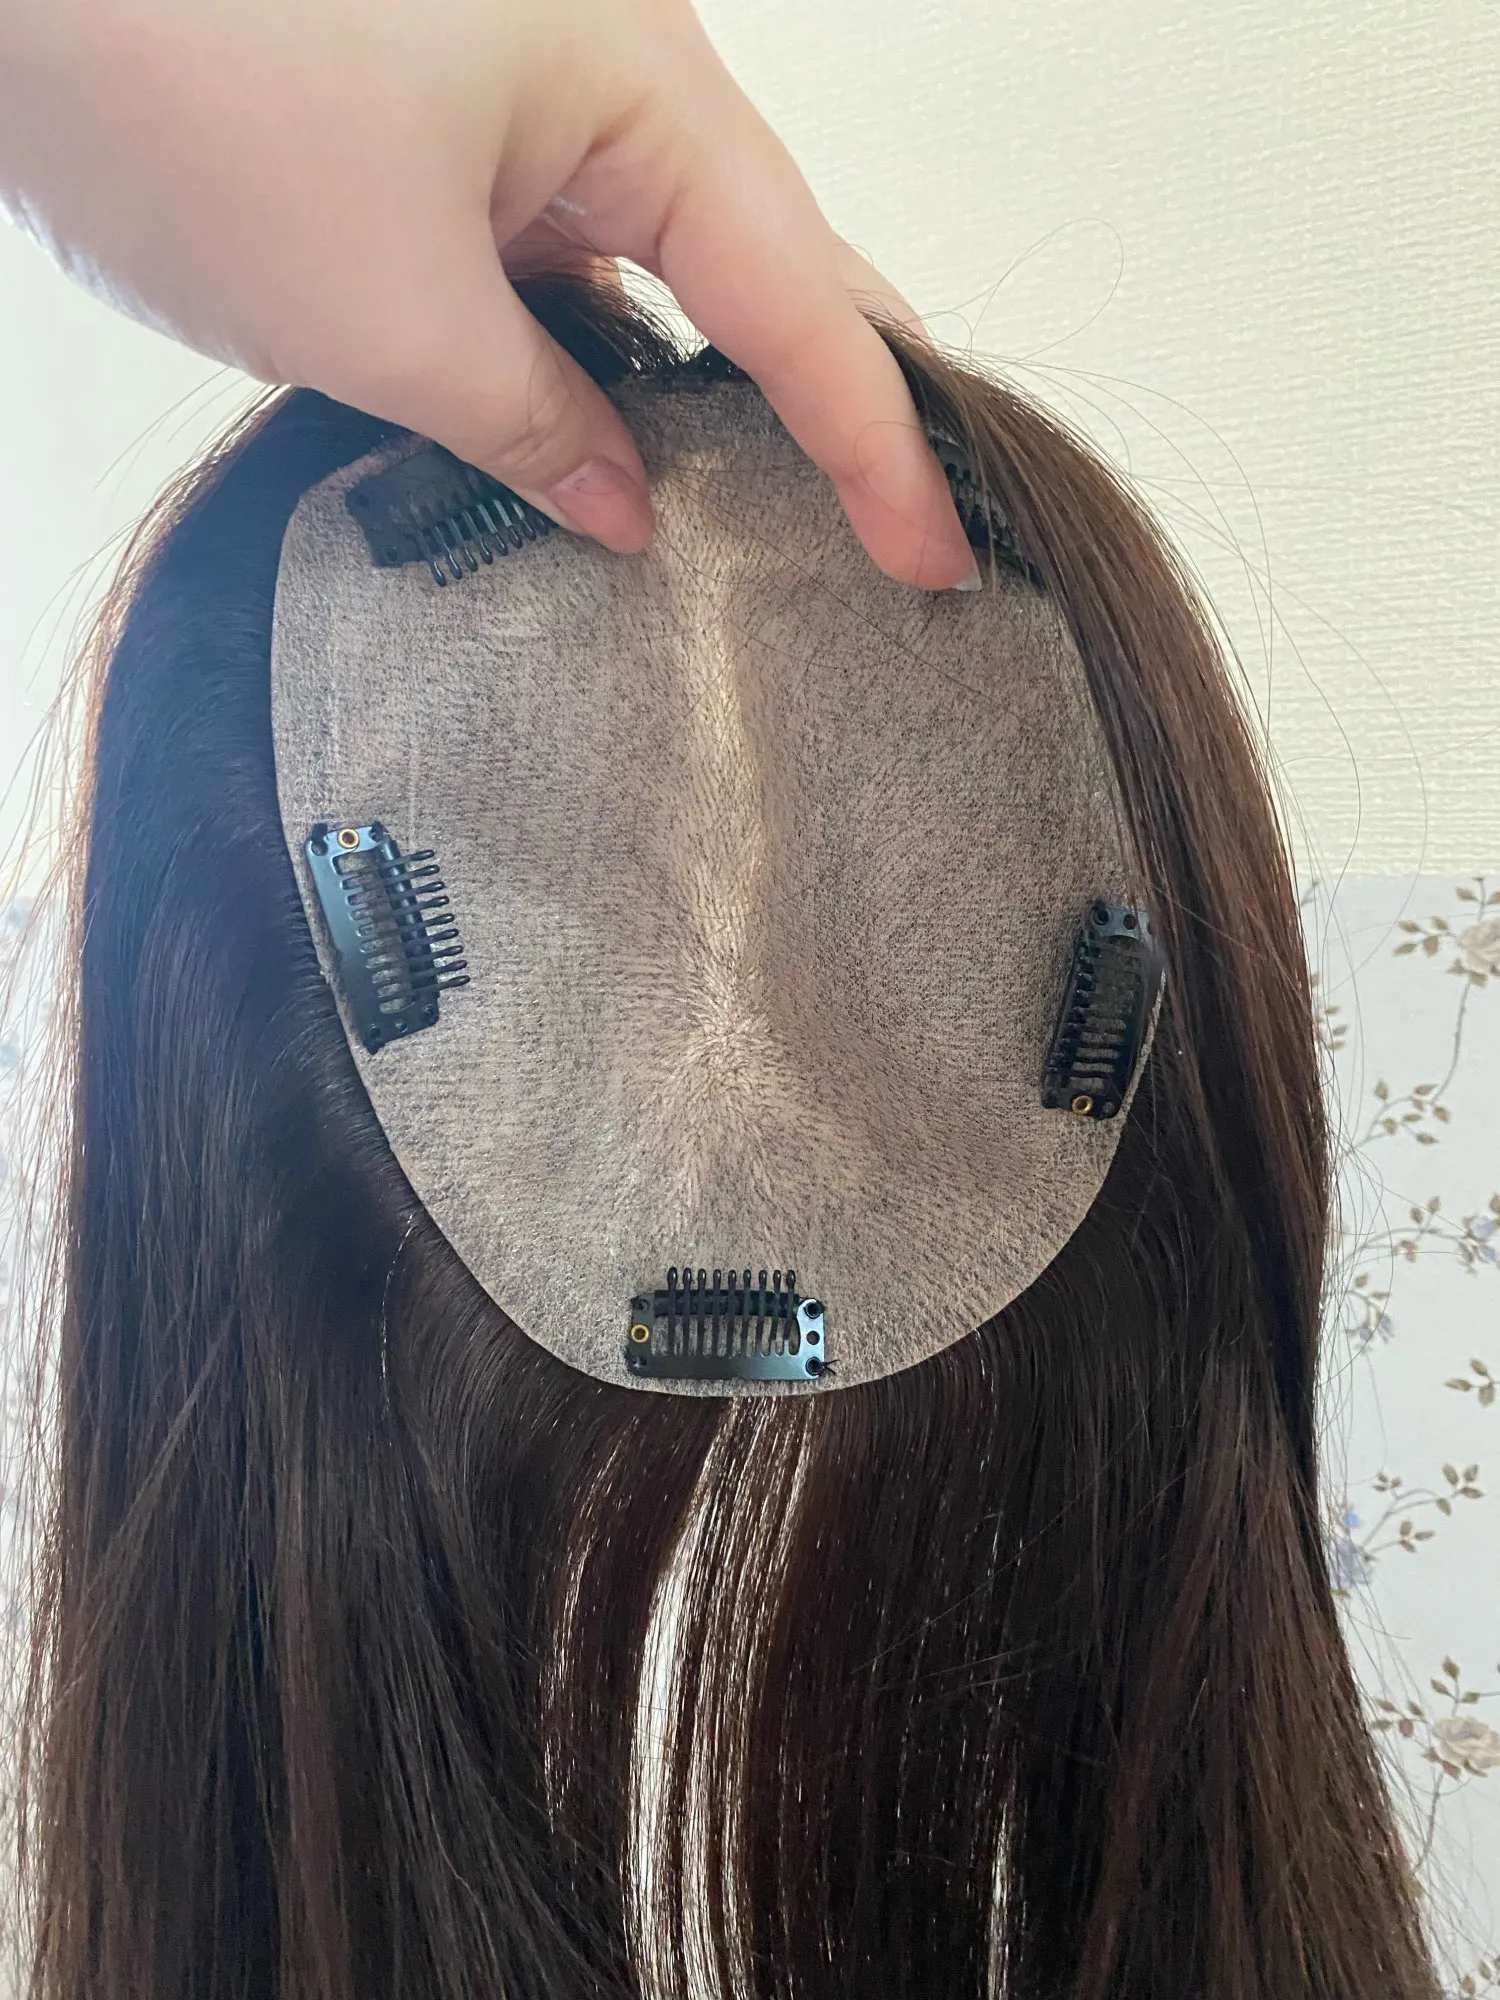 シルクトップバージンブラジルの髪の細かいヘアピース15x16cm 6x6 "ナチュラル頭皮の4つのクリップを持つ女性のためのシルクスキンベースヒューマンヘアトッパー